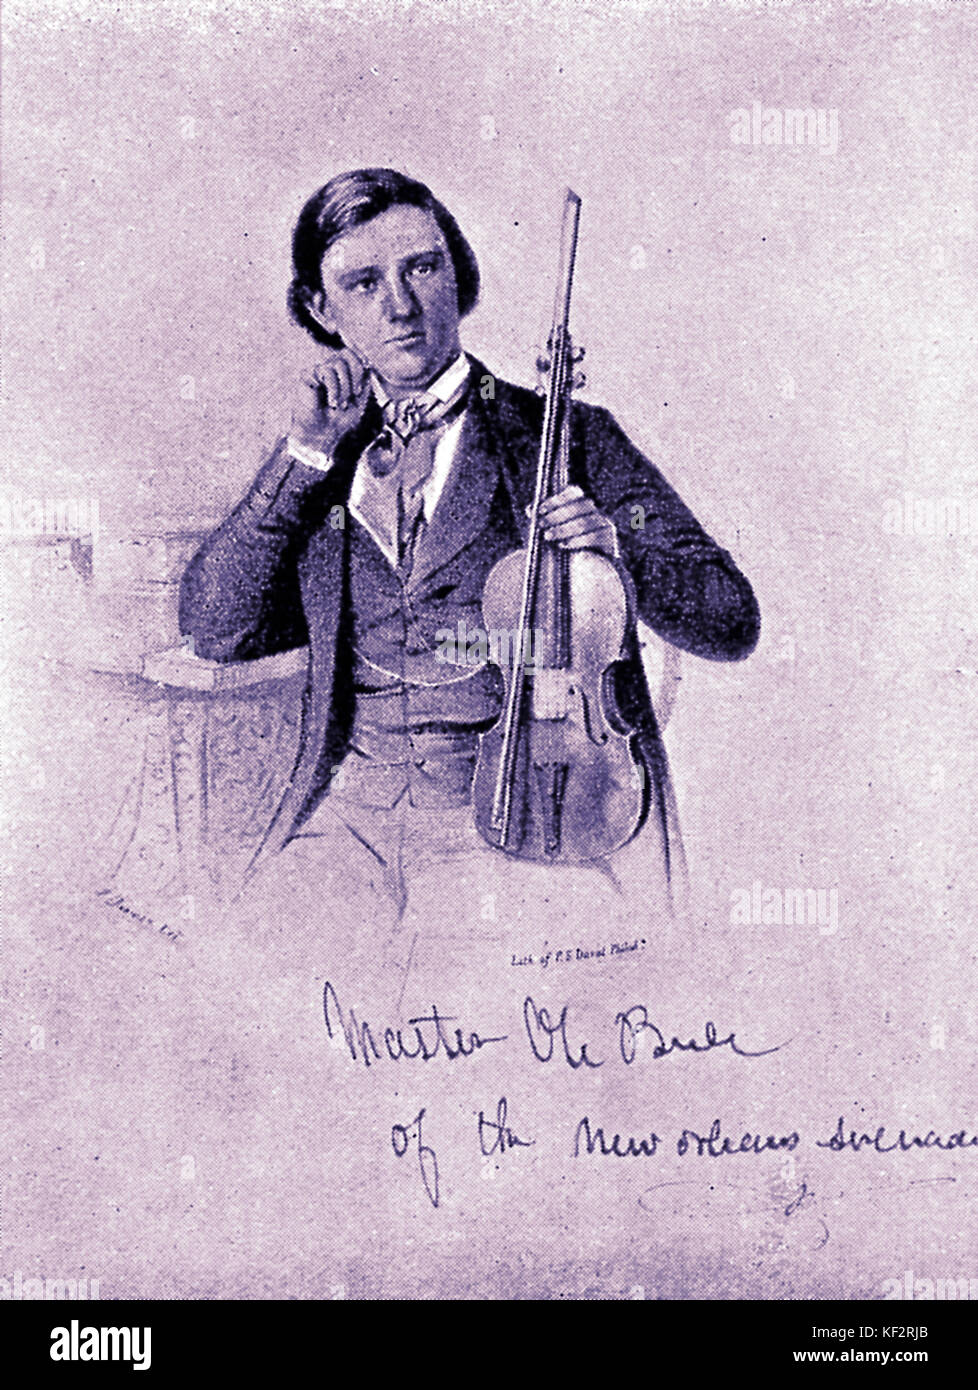 Borneman Ole Bull, le violoniste et compositeur norvégien. 5 février 1810 - 17 août 1880. Banque D'Images